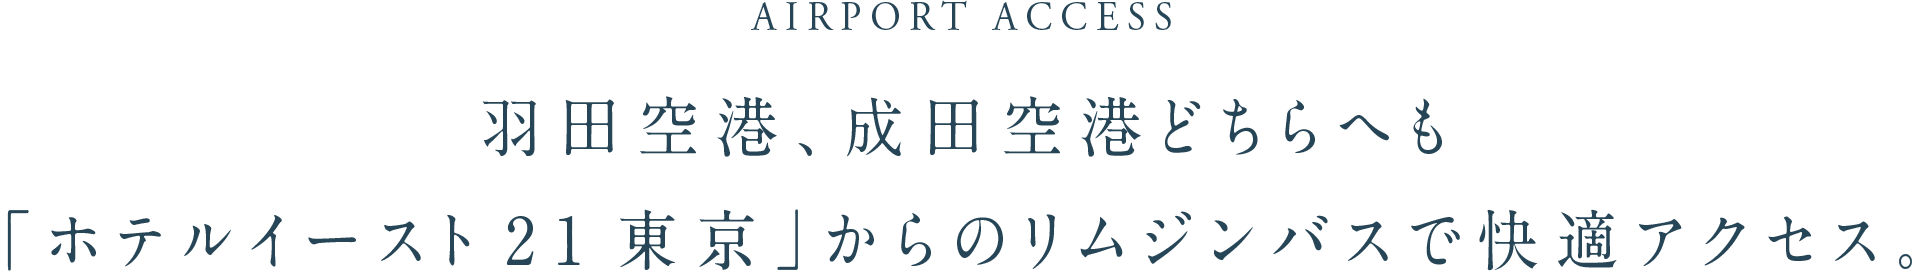 AIRPORT ACCESS 羽田空港、成田空港どちらへも「ホテルイースト21東京」からのリムジンバスで快適アクセス。